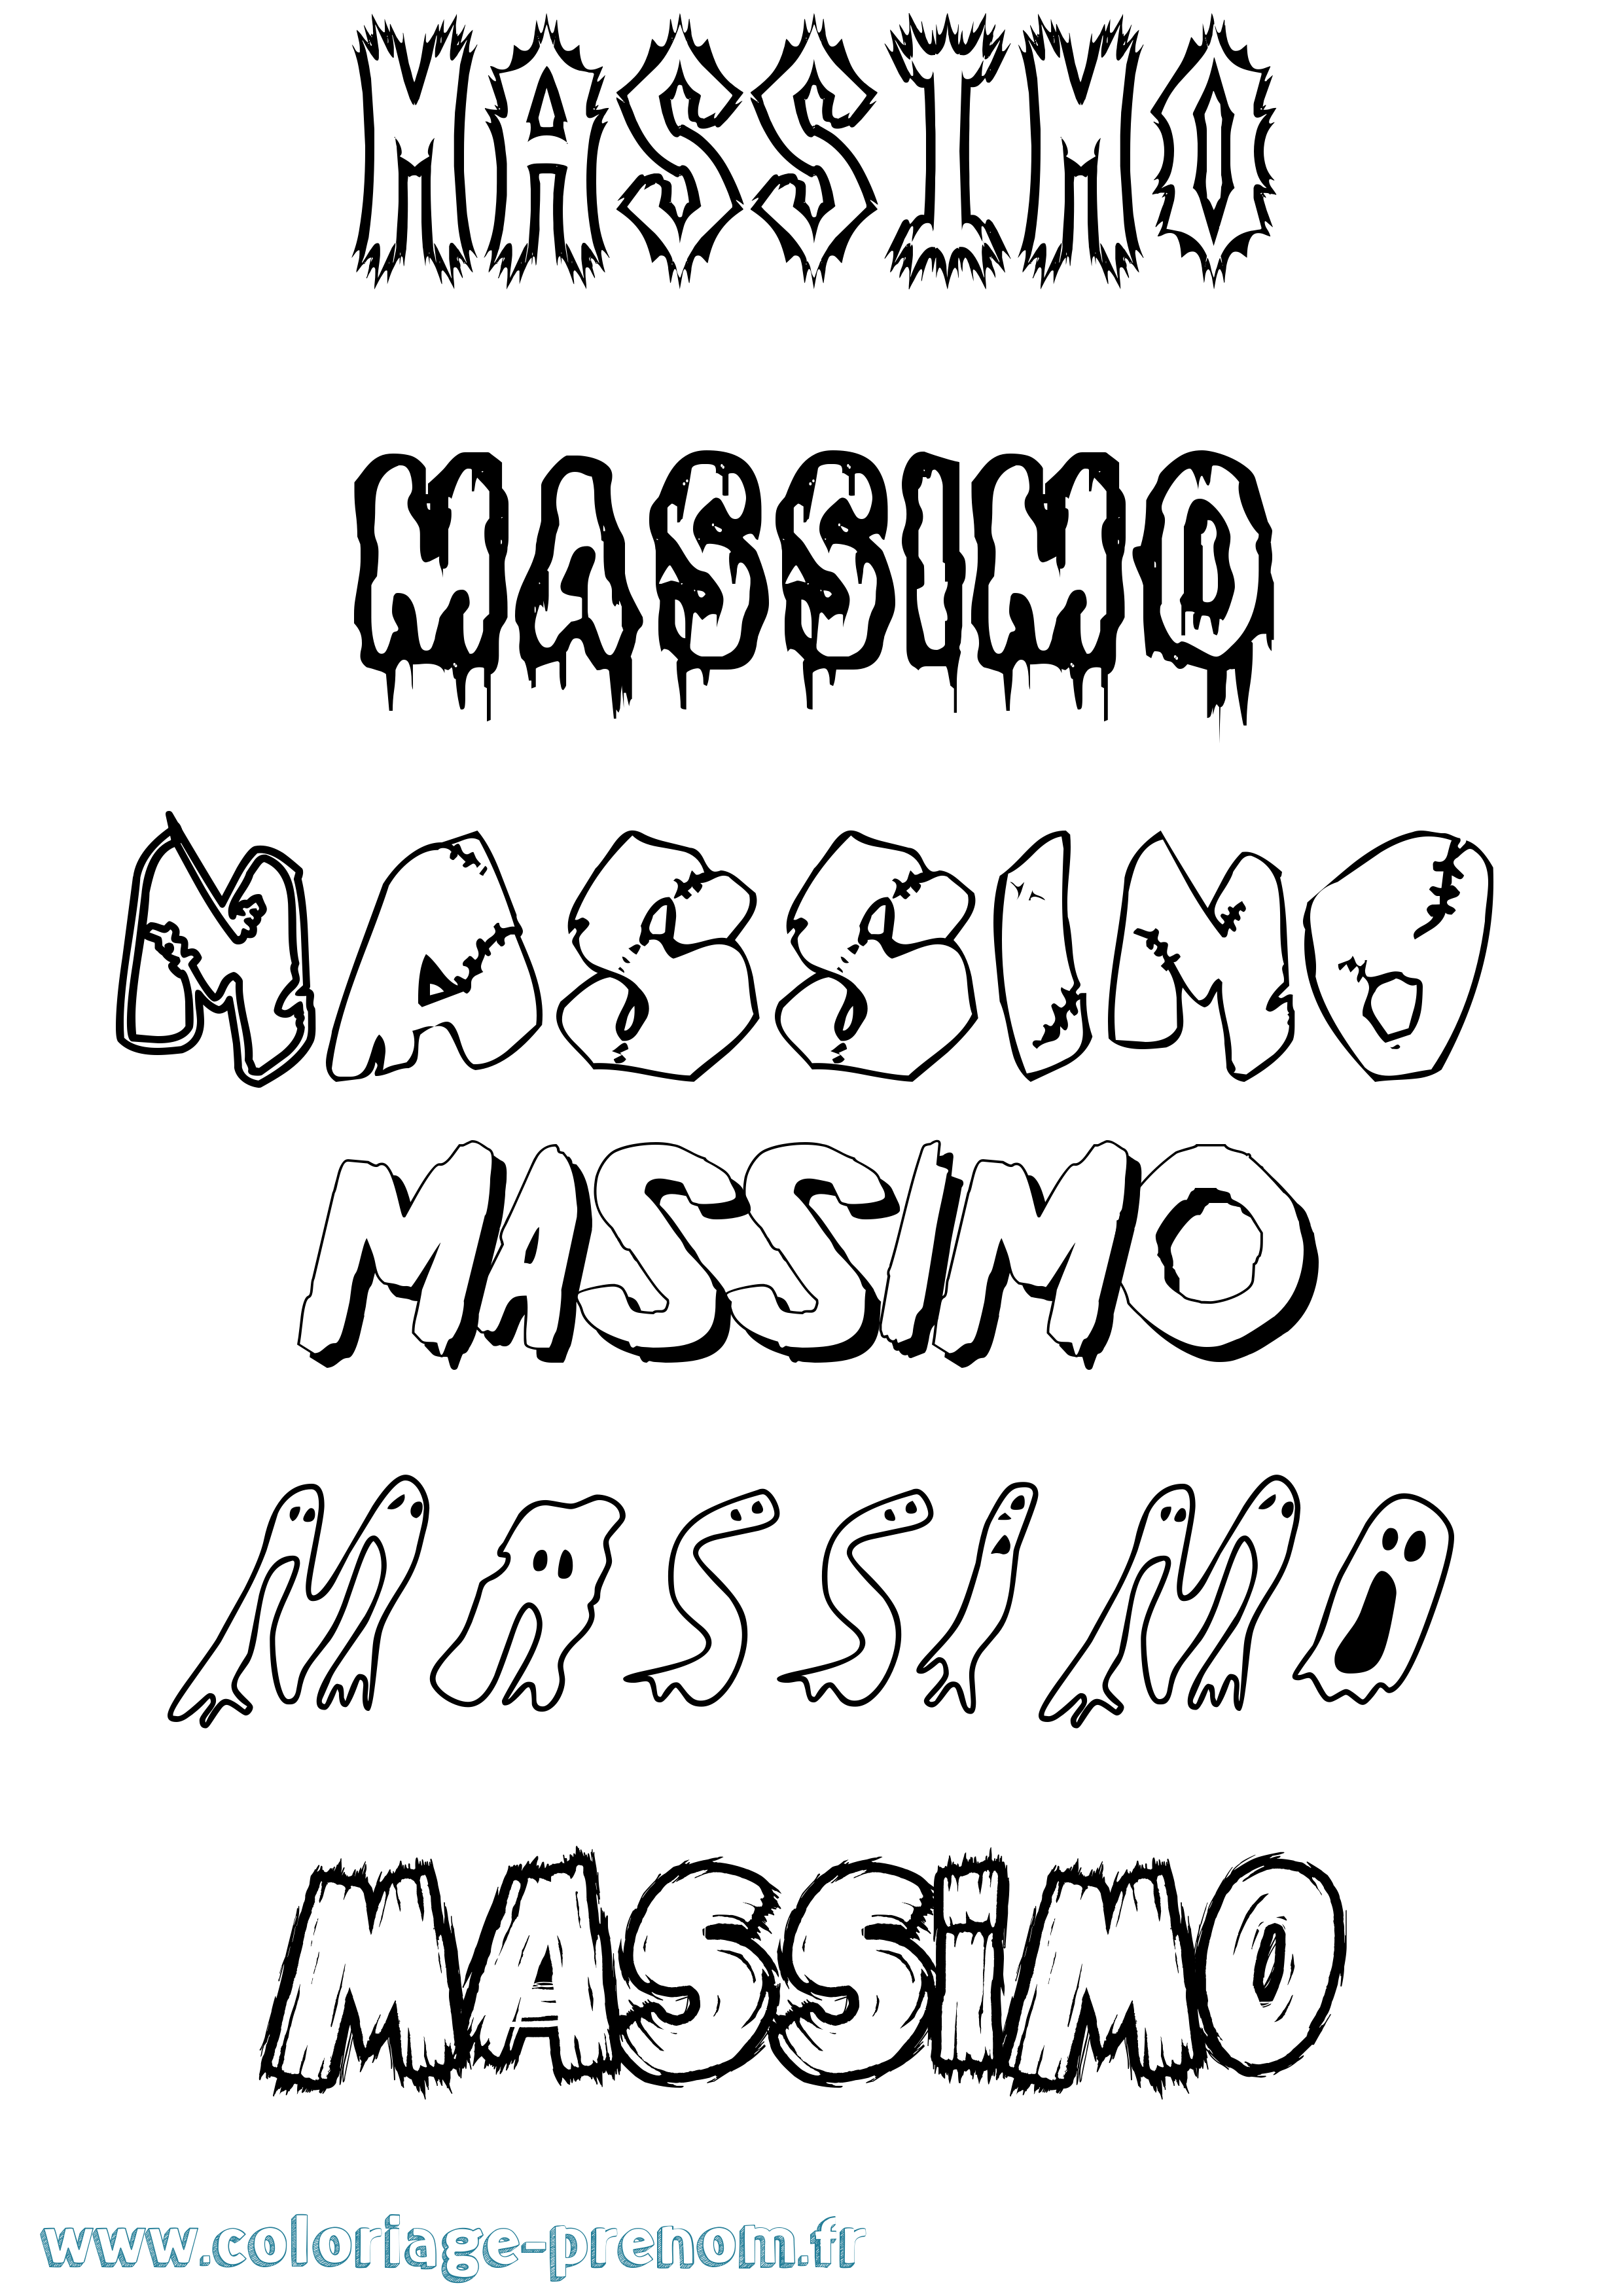 Coloriage prénom Massimo Frisson